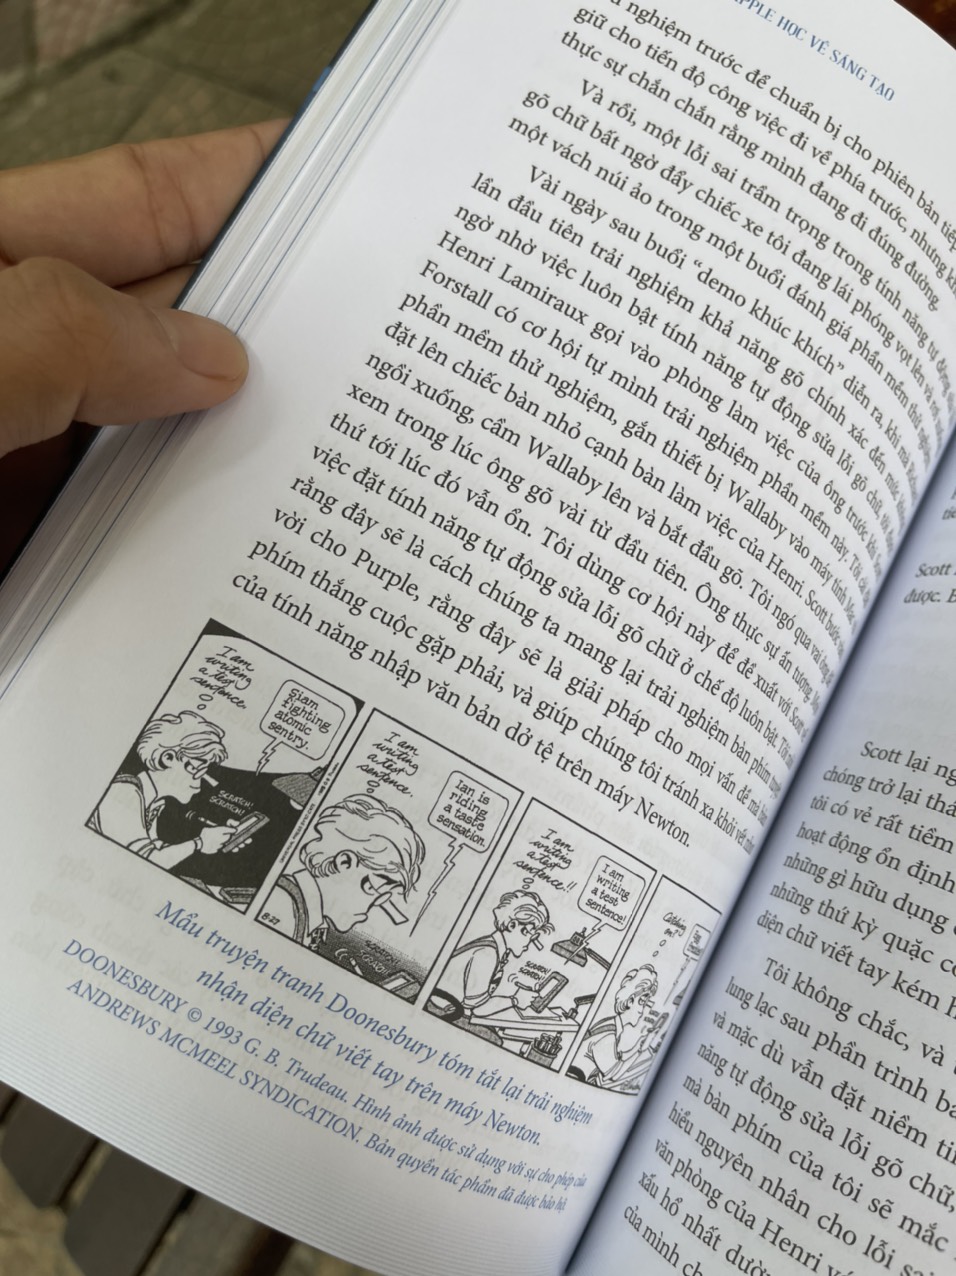 (Wall Street Journal Bestseller) ĐẾN APPLE HỌC VỀ SÁNG TẠO - Ken Kocienda – Phạm Quốc Anh dịch - Saigonbooks – Nxb Thế Giới (Bìa mềm)